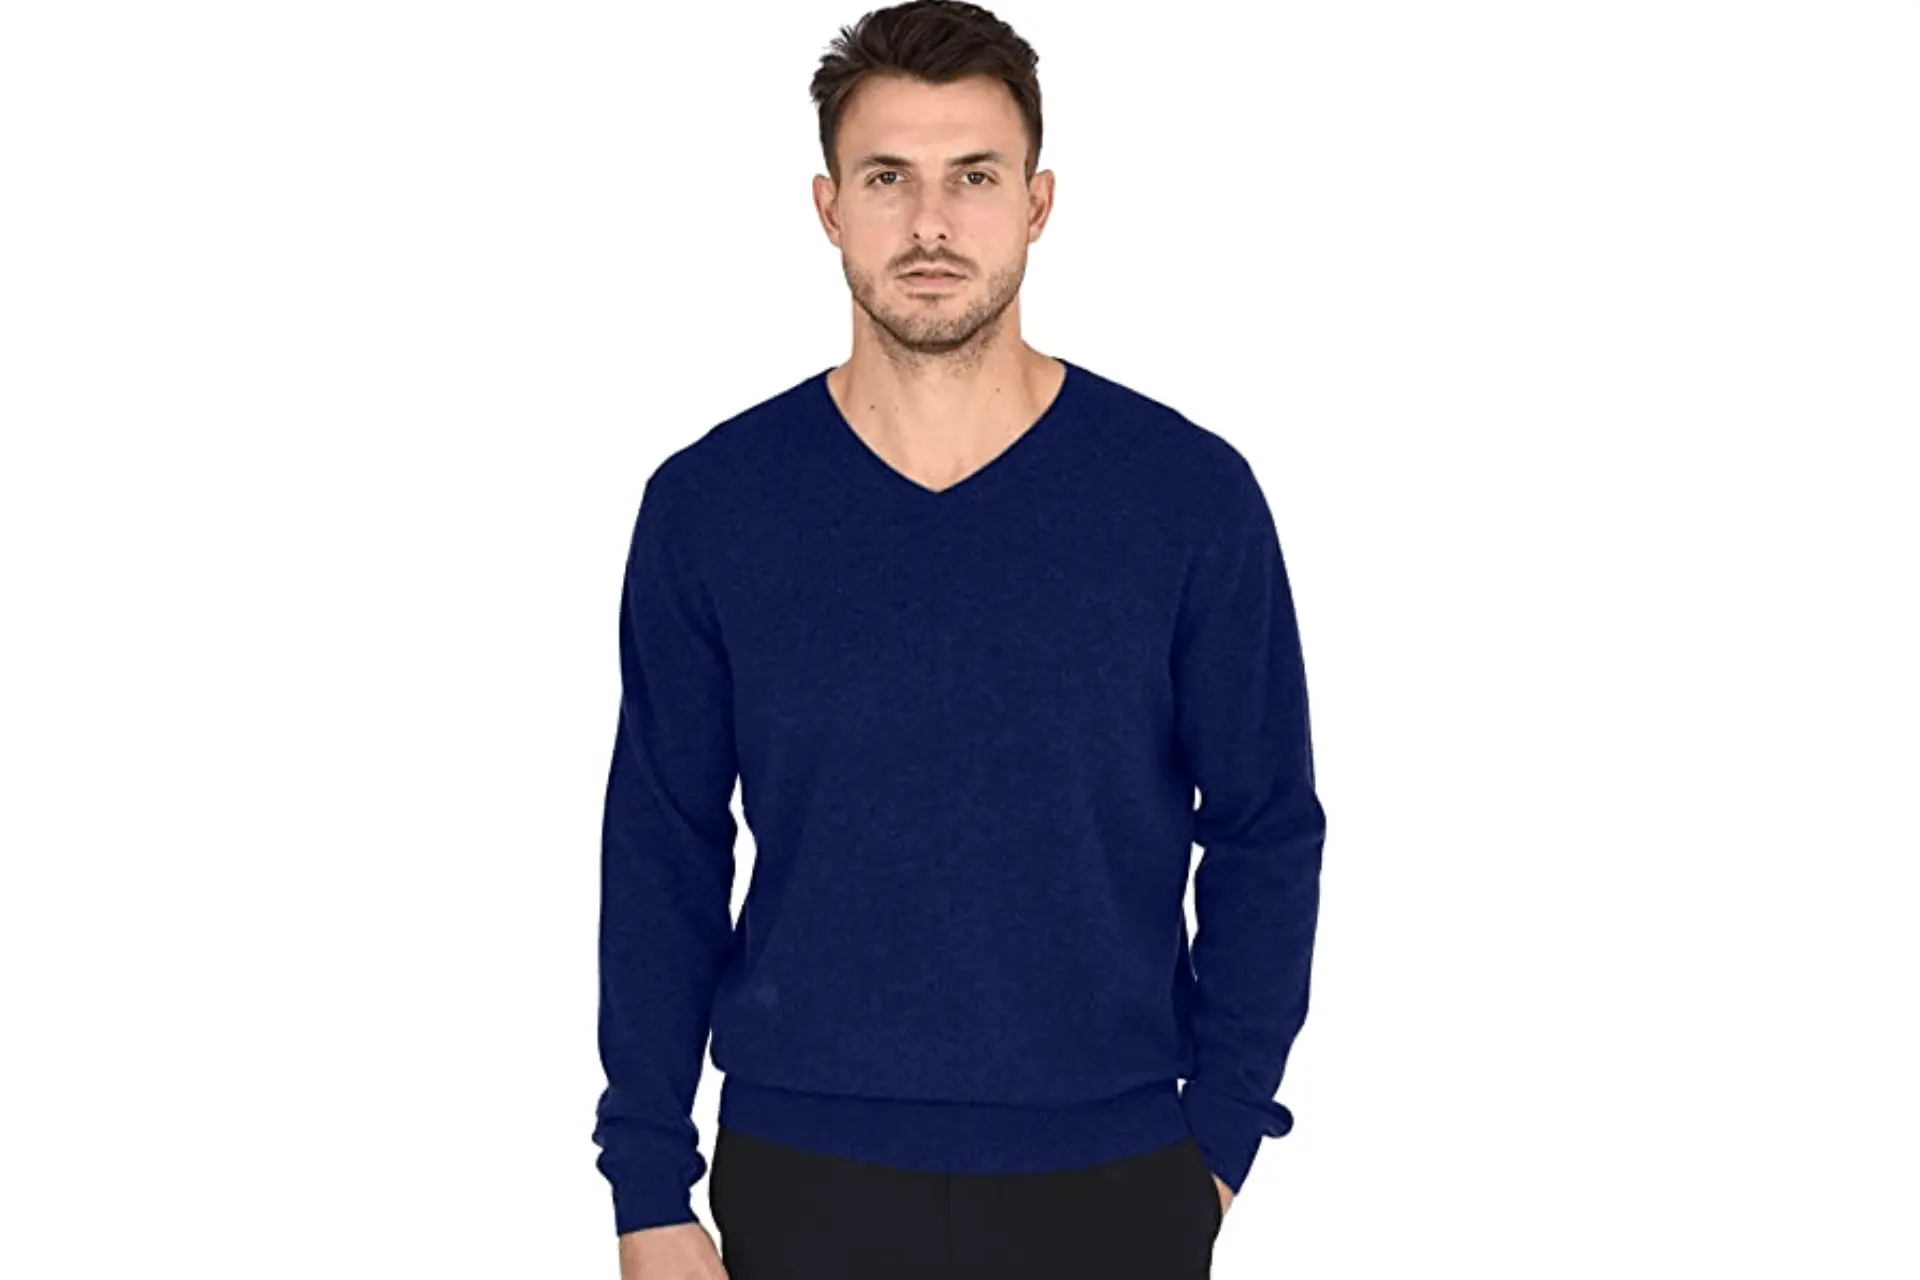 Cashmeren Men's Essentials Knit V-Neck Sweater